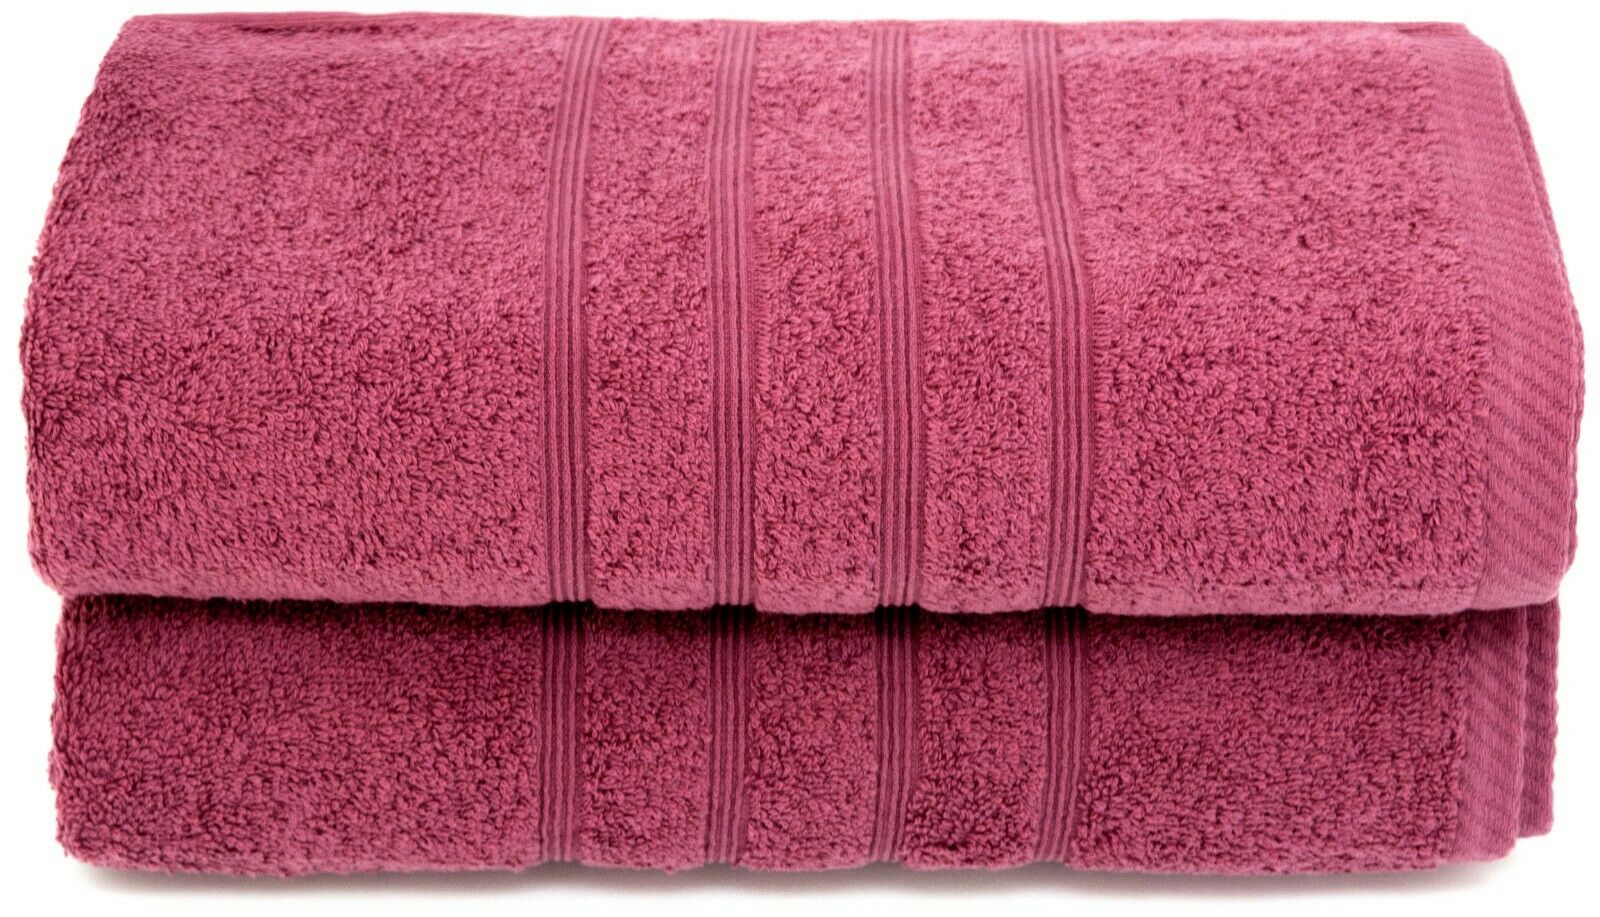 RingSpun Cotton Luxury Bath Towels 550 GSM 2pcs Set Size 30"x52"